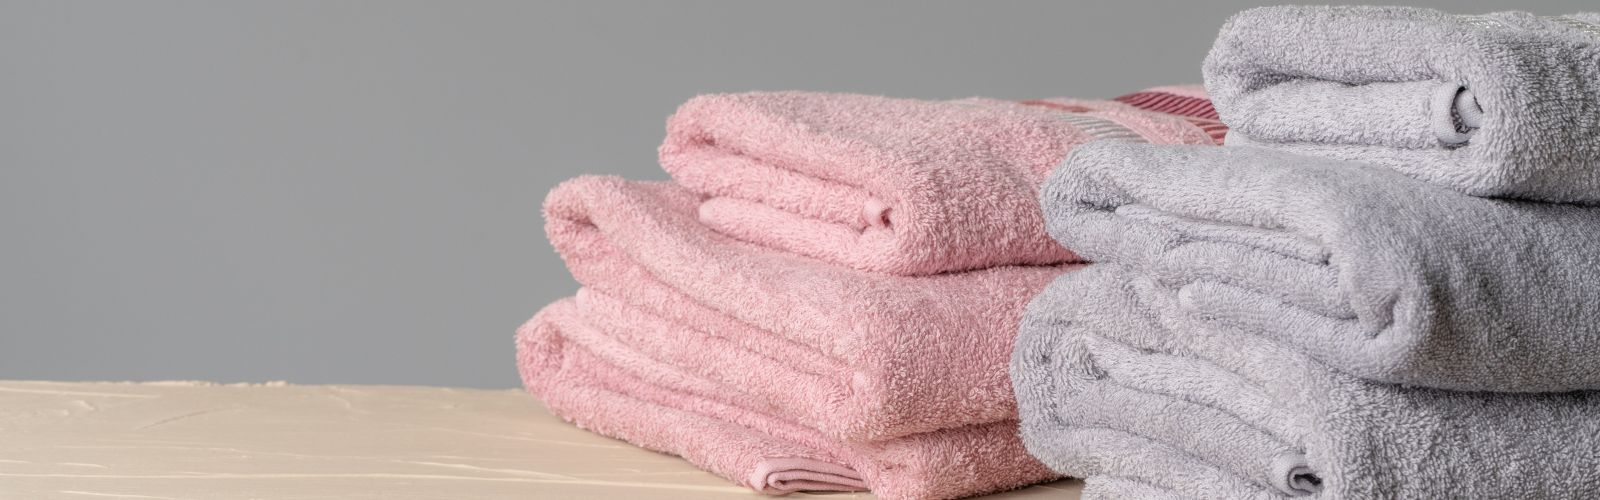 Bulk Towels Manufacturer